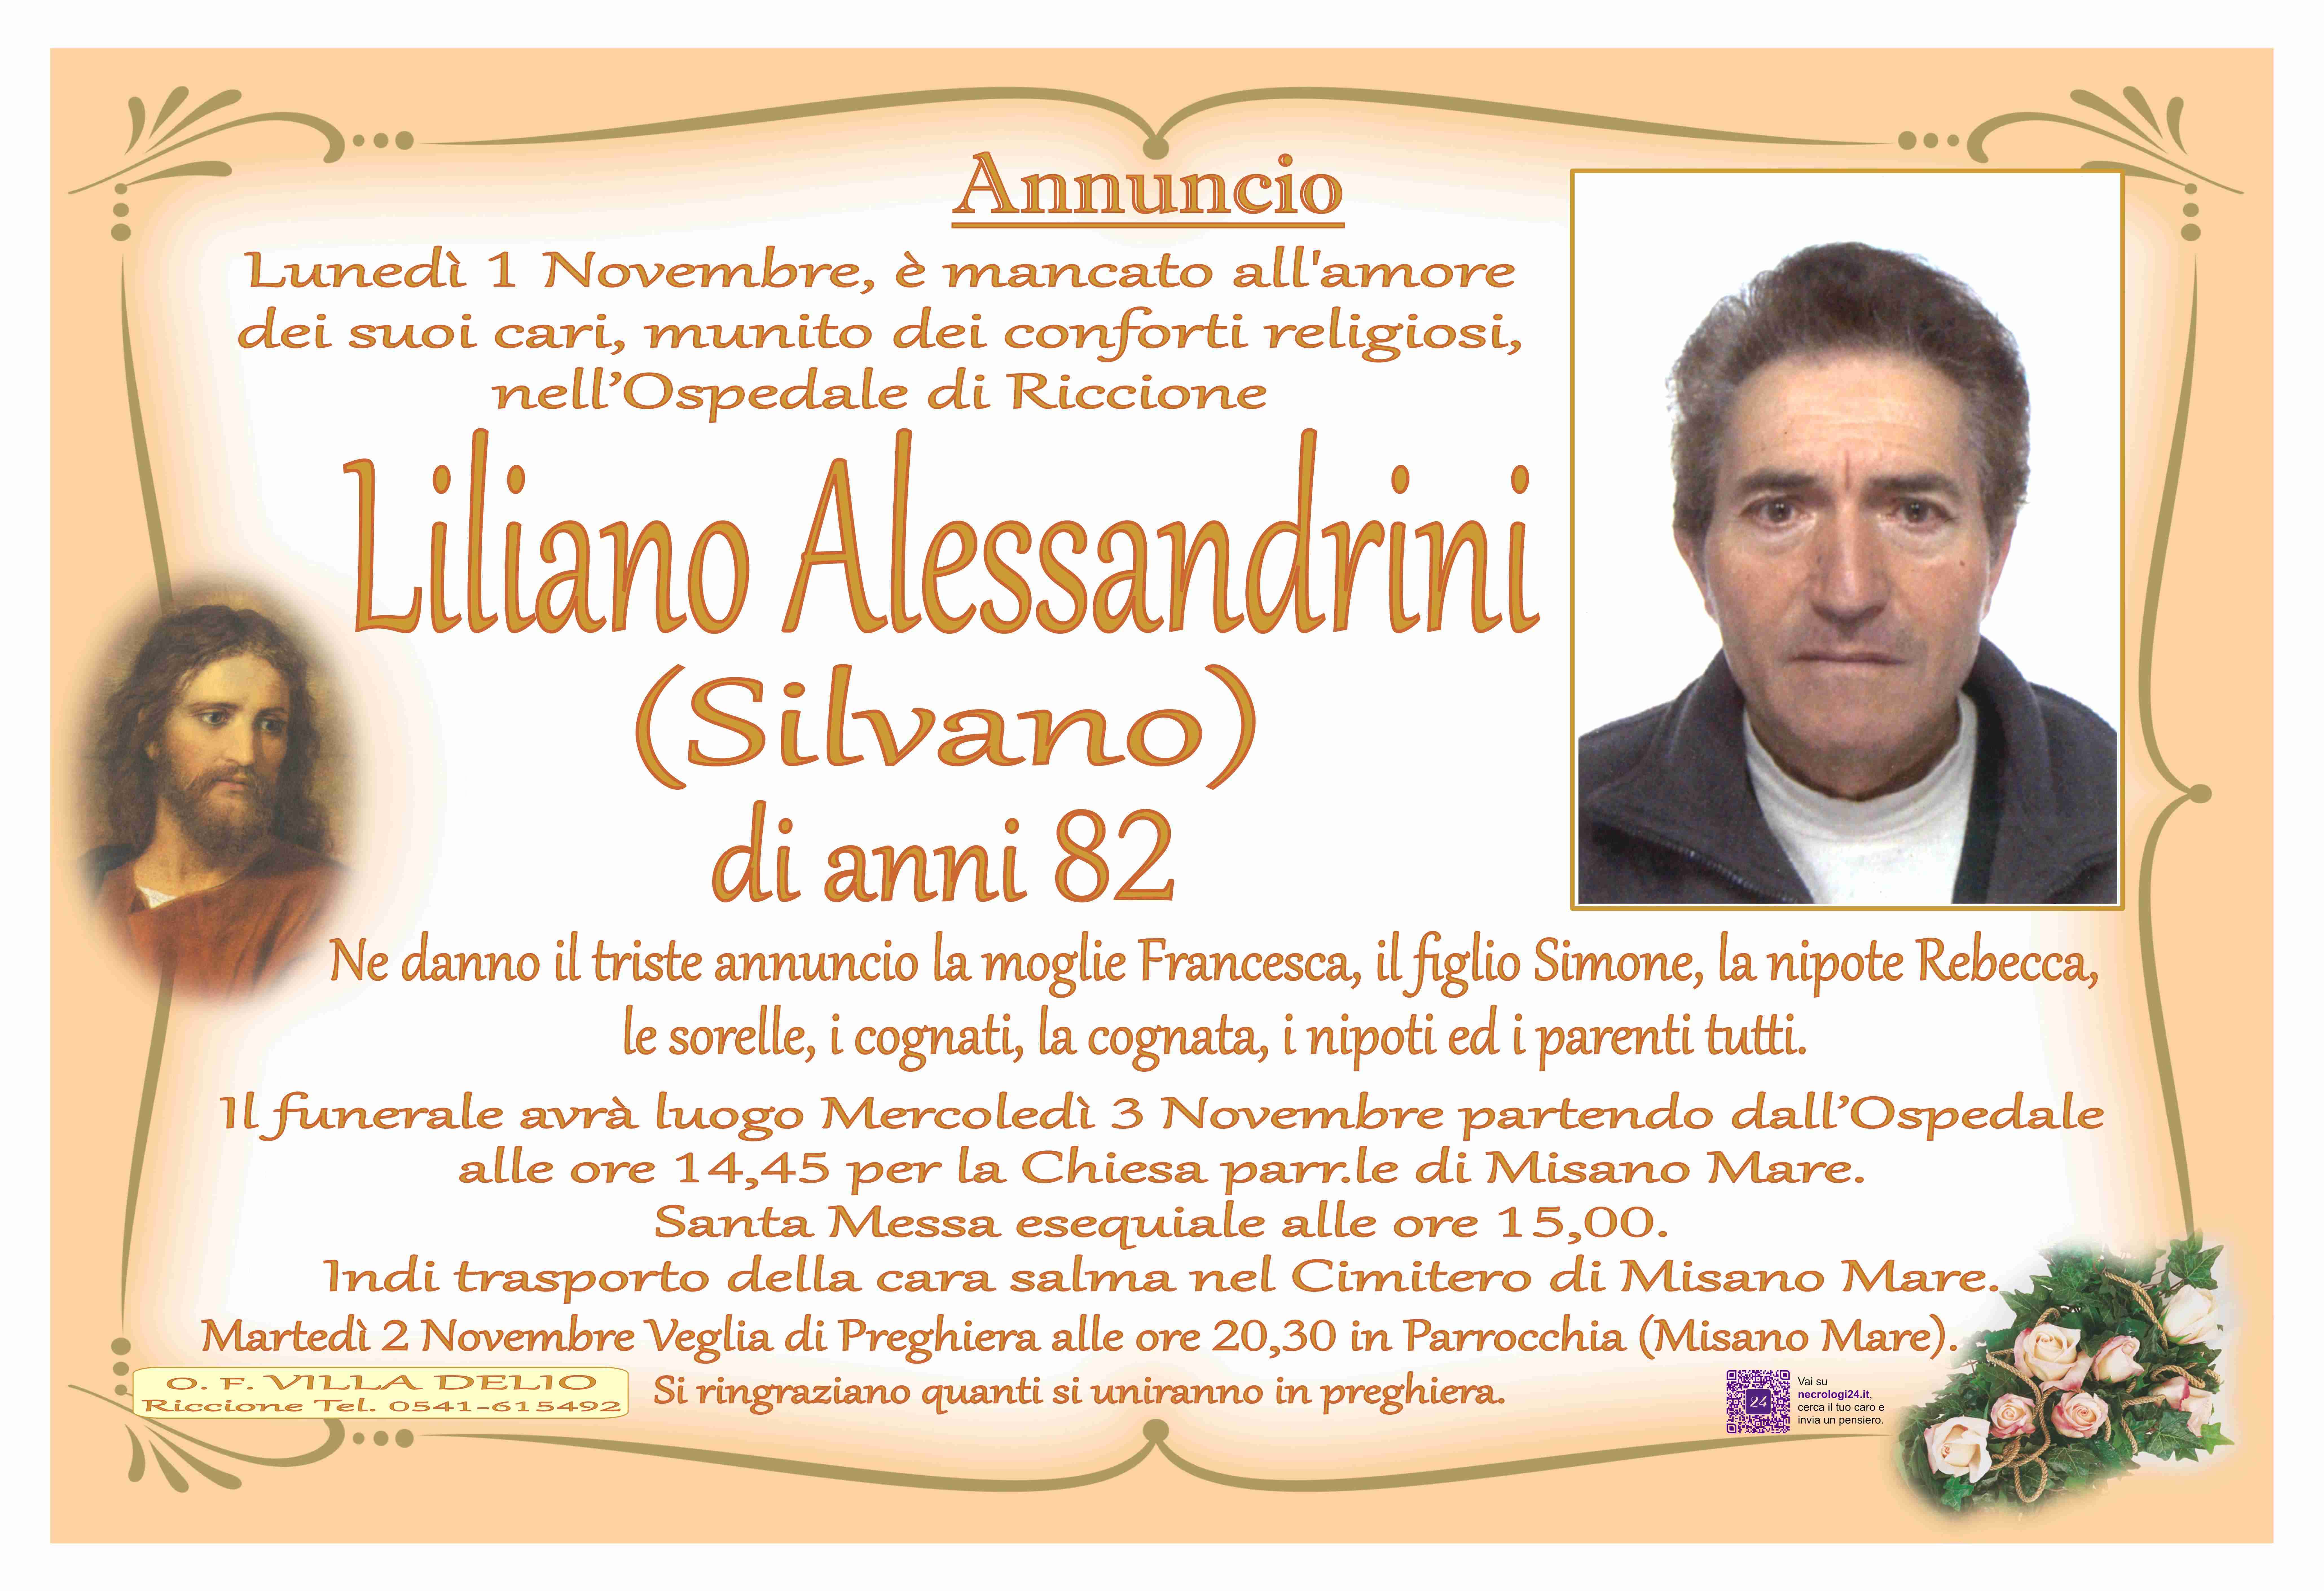 Liliano Alessandrini